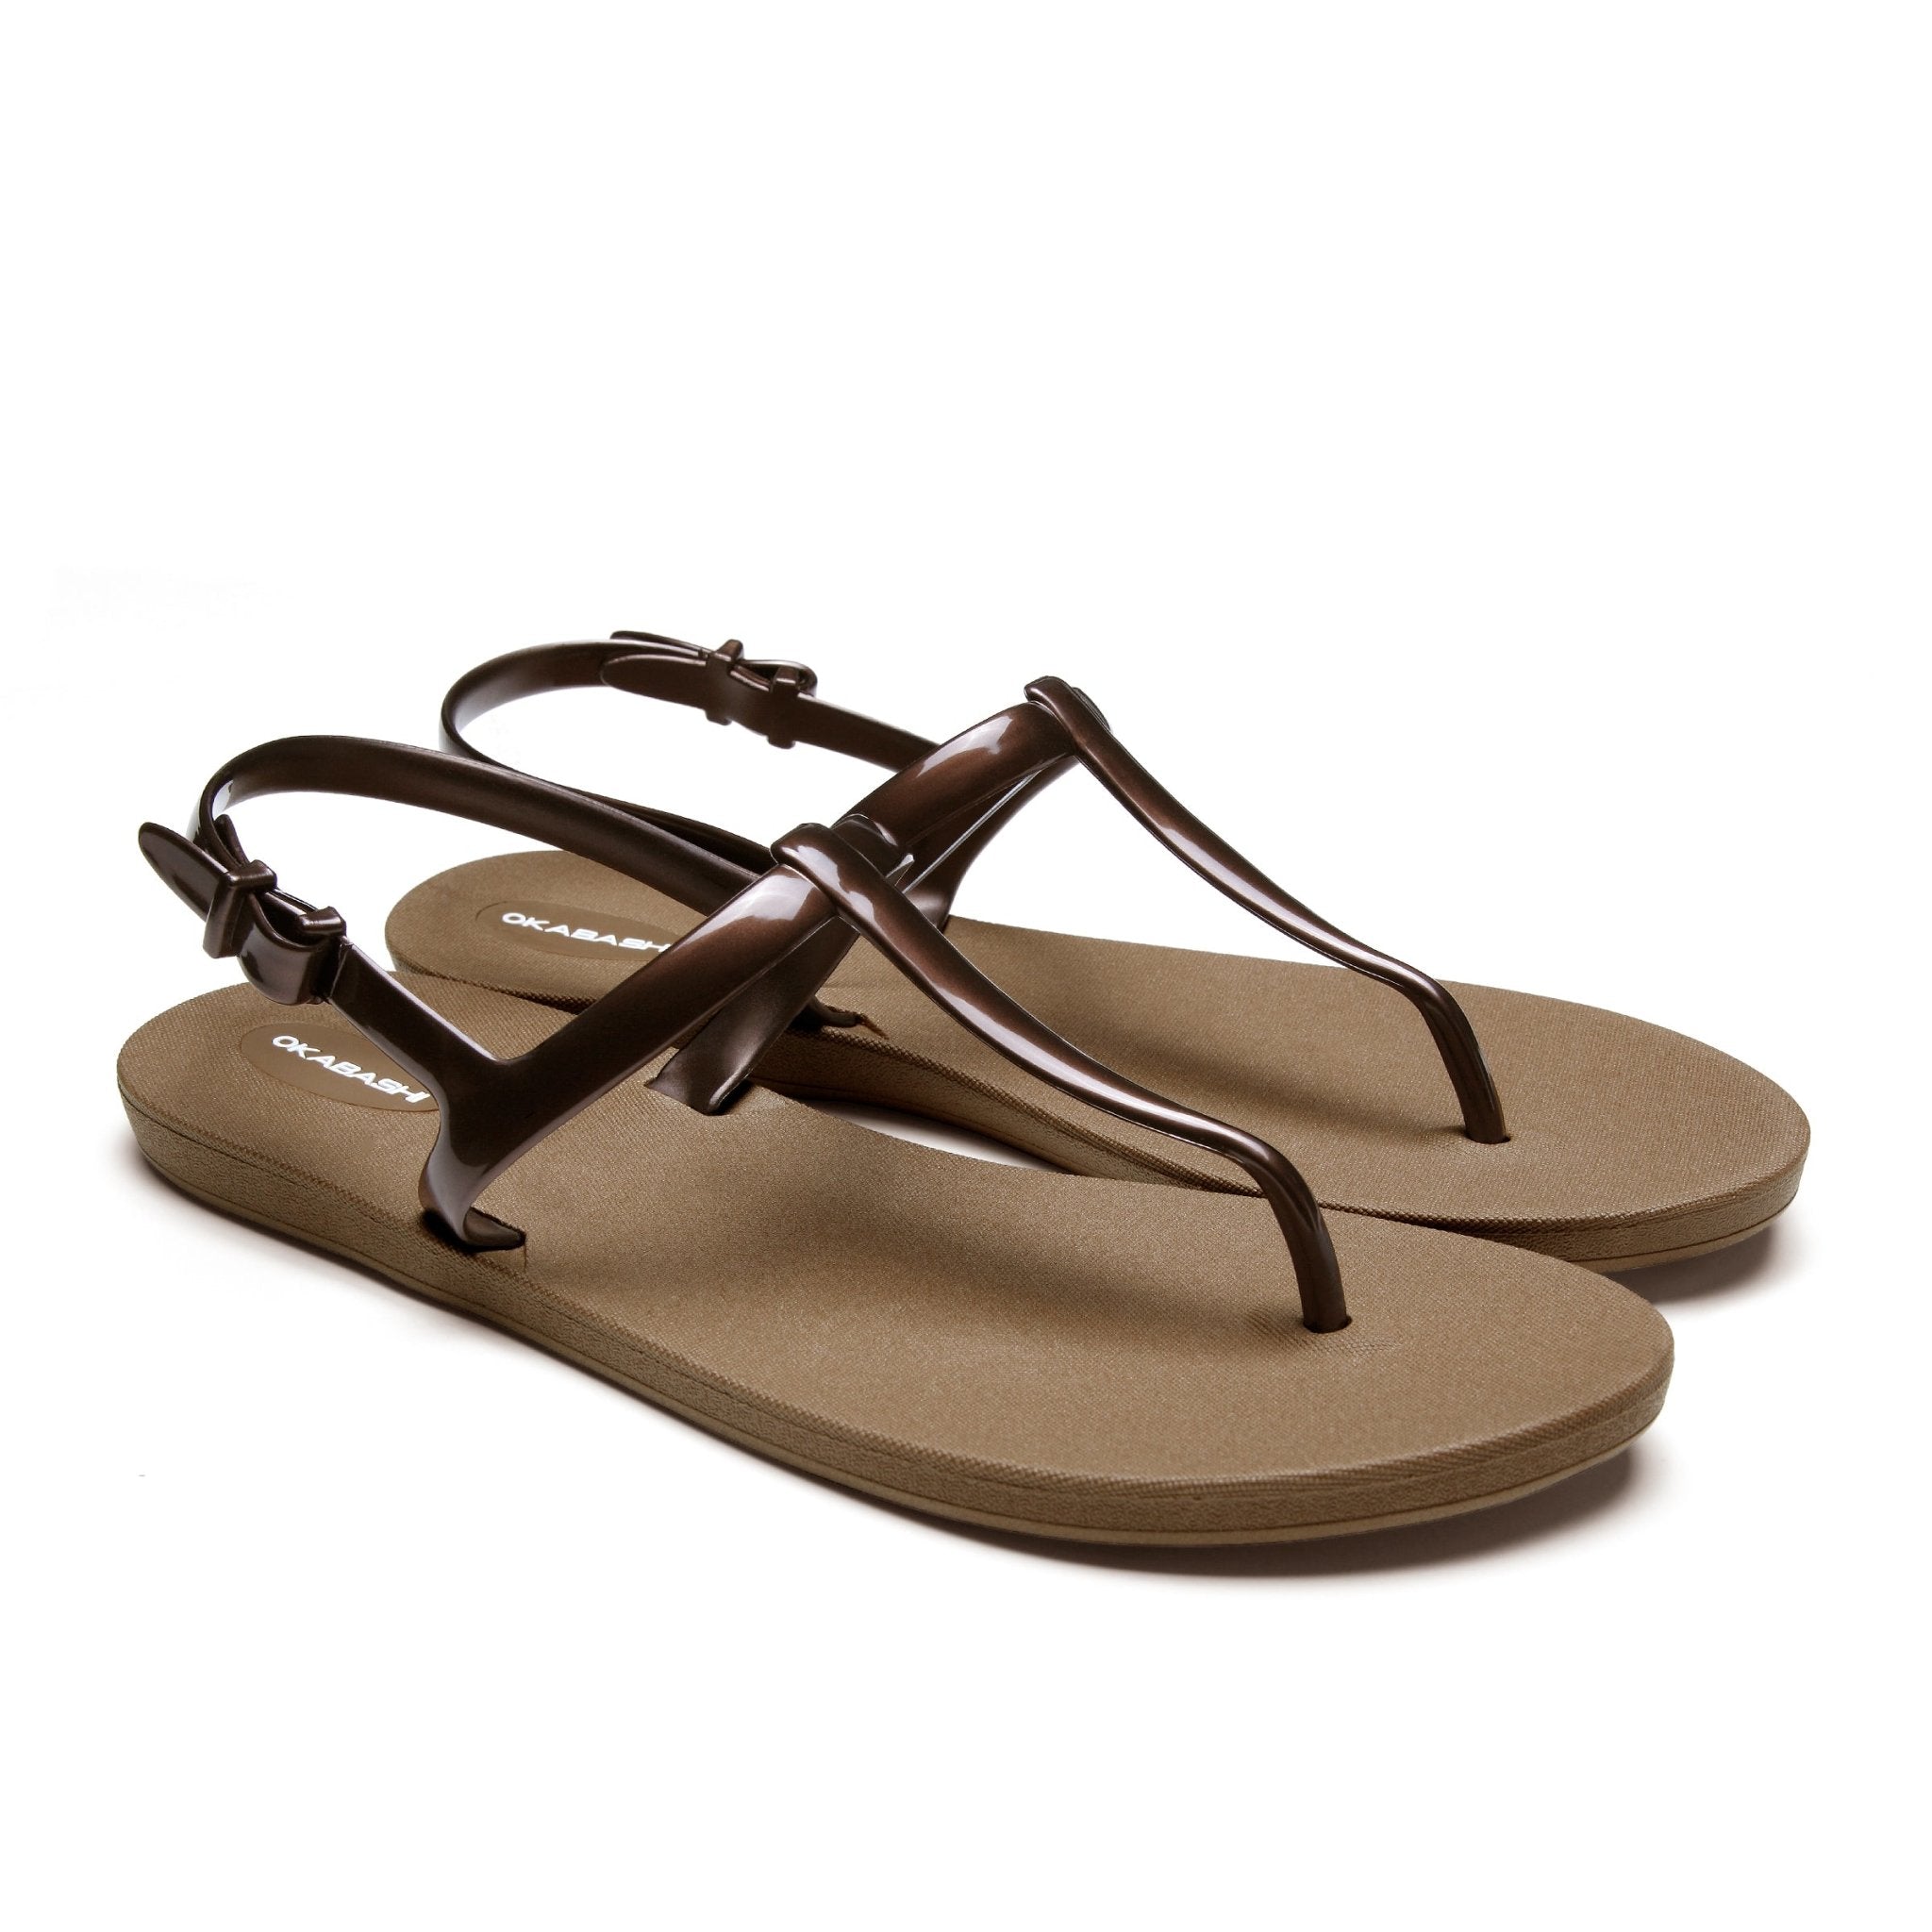 A.EMERY Reema Leather Flat Sandals - Farfetch